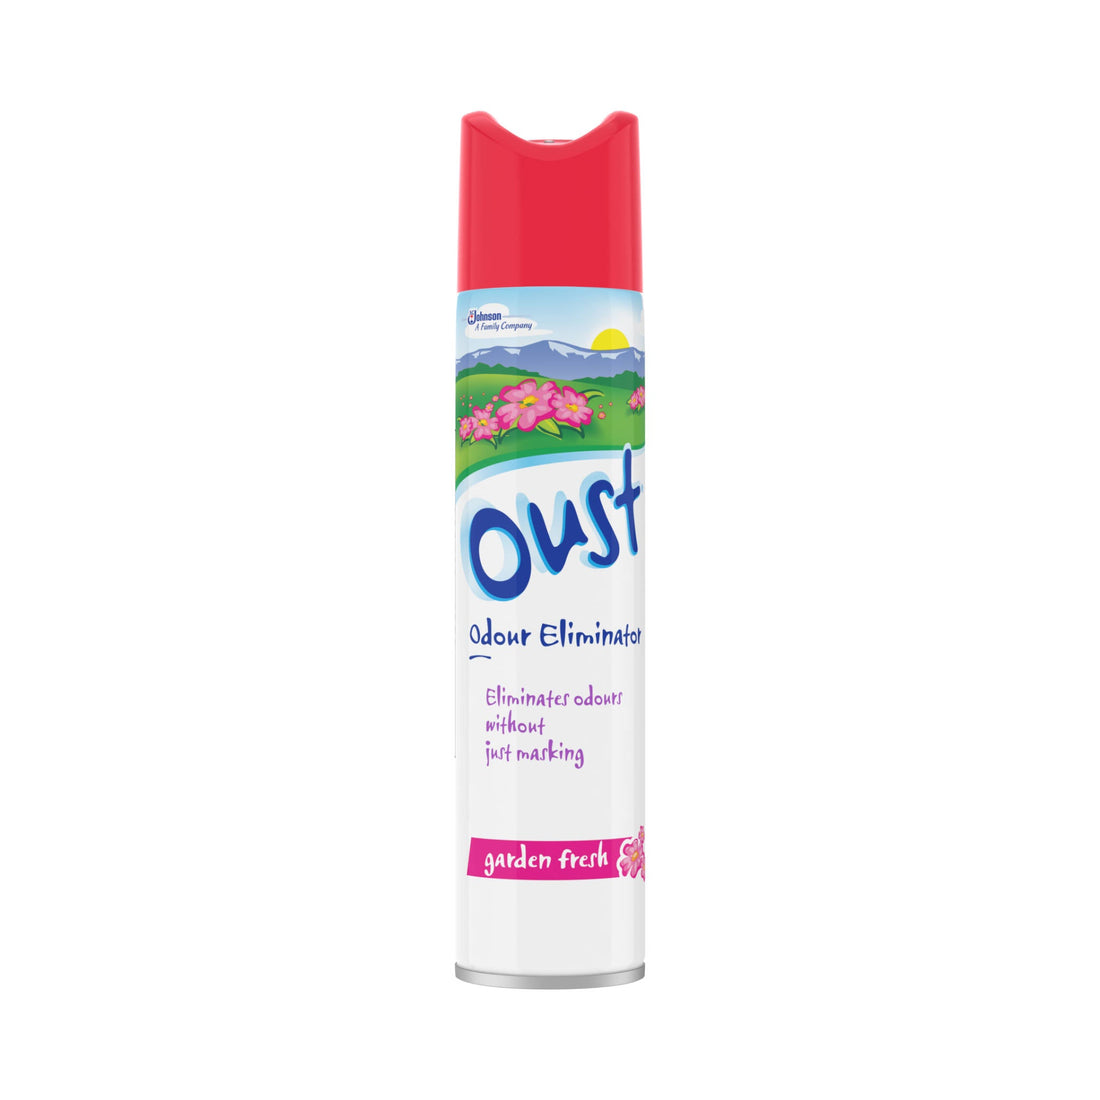 Oust Air Freshener Odour Eliminator Garden Fresh | 300ml